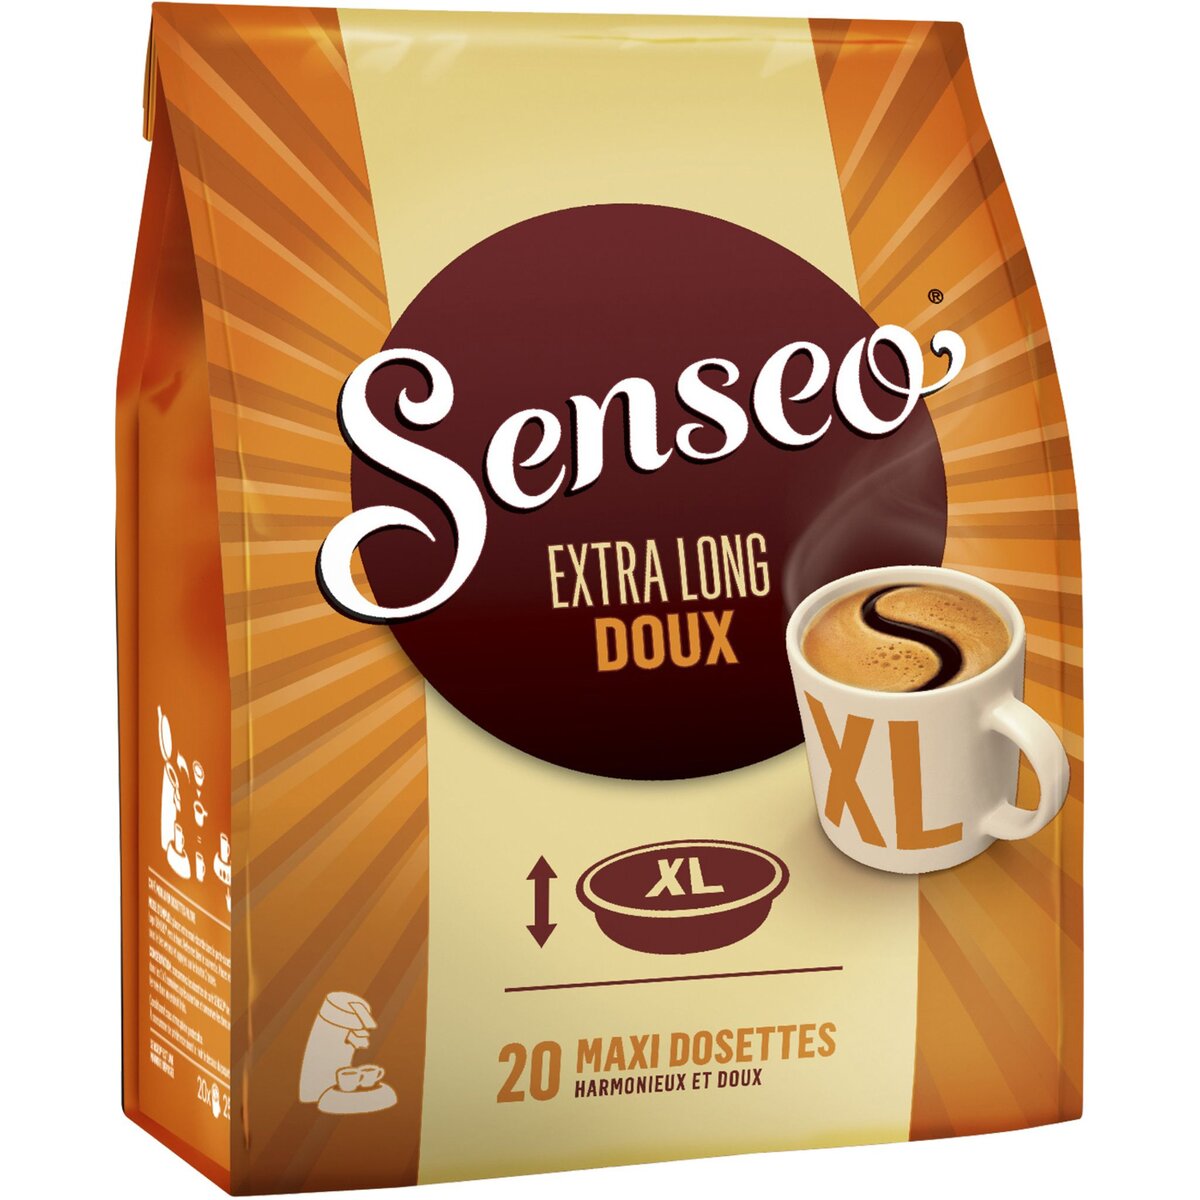 SENSEO Senseo café extra long doux dosette x20 -250g pas cher